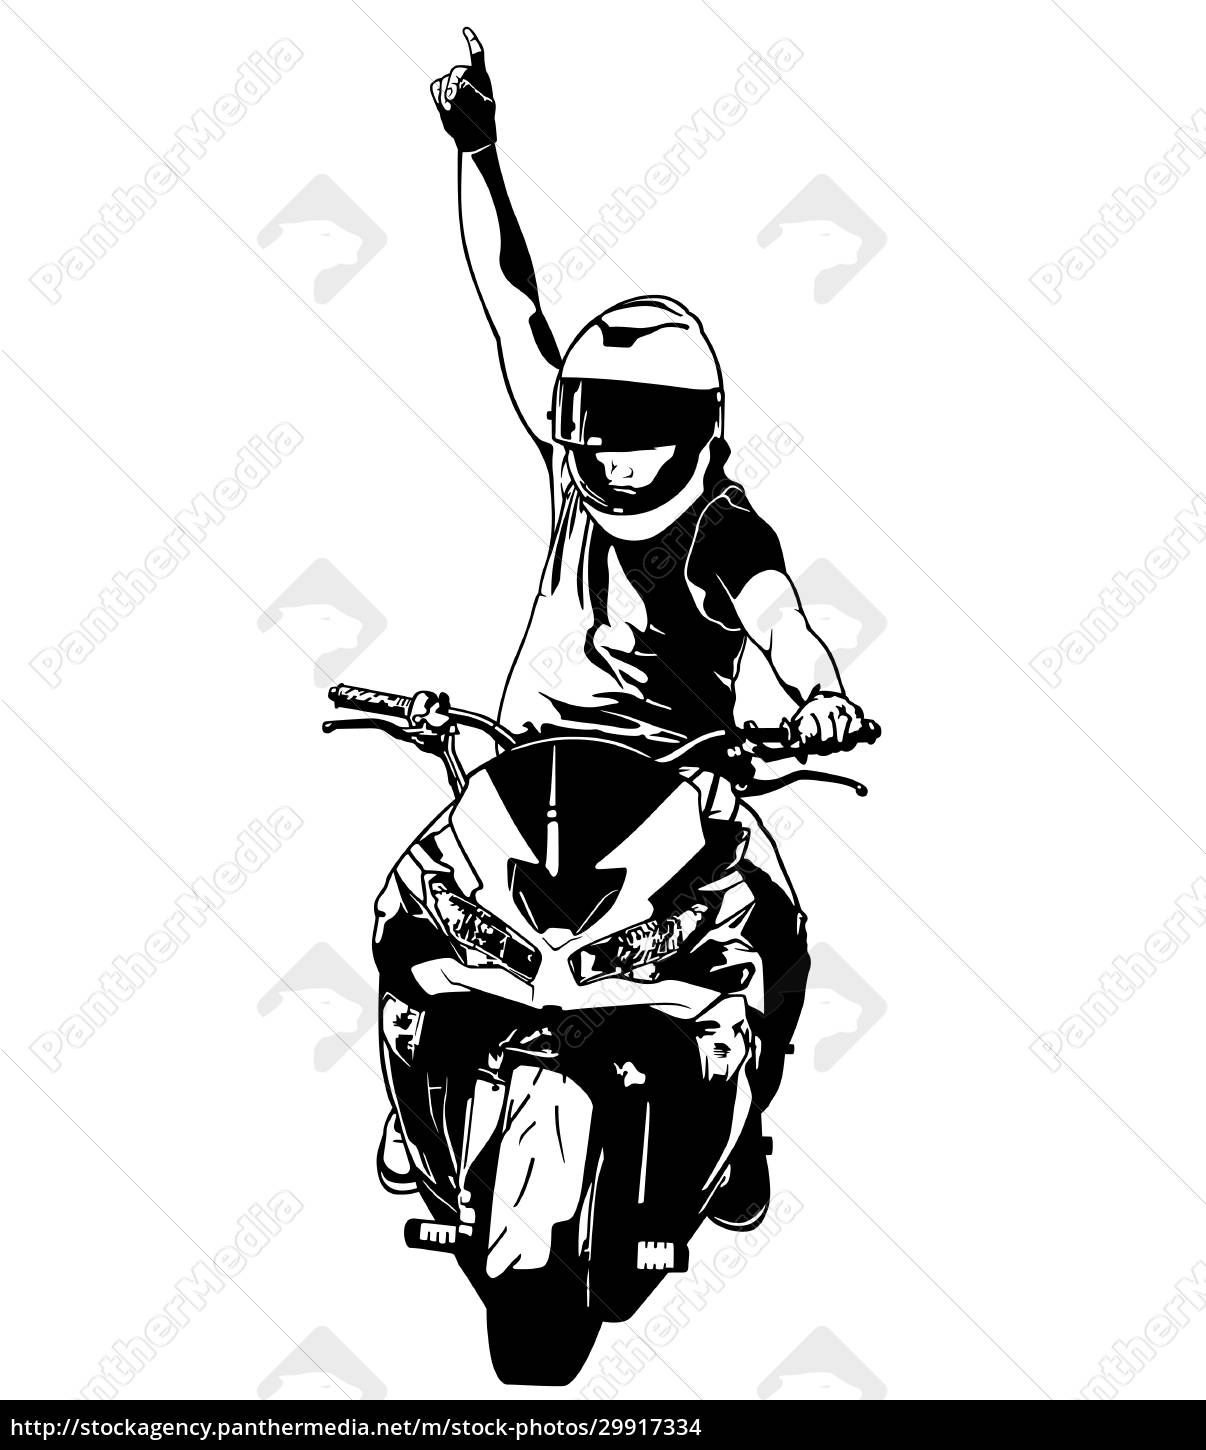 Um desenho preto e branco de um homem andando de moto.